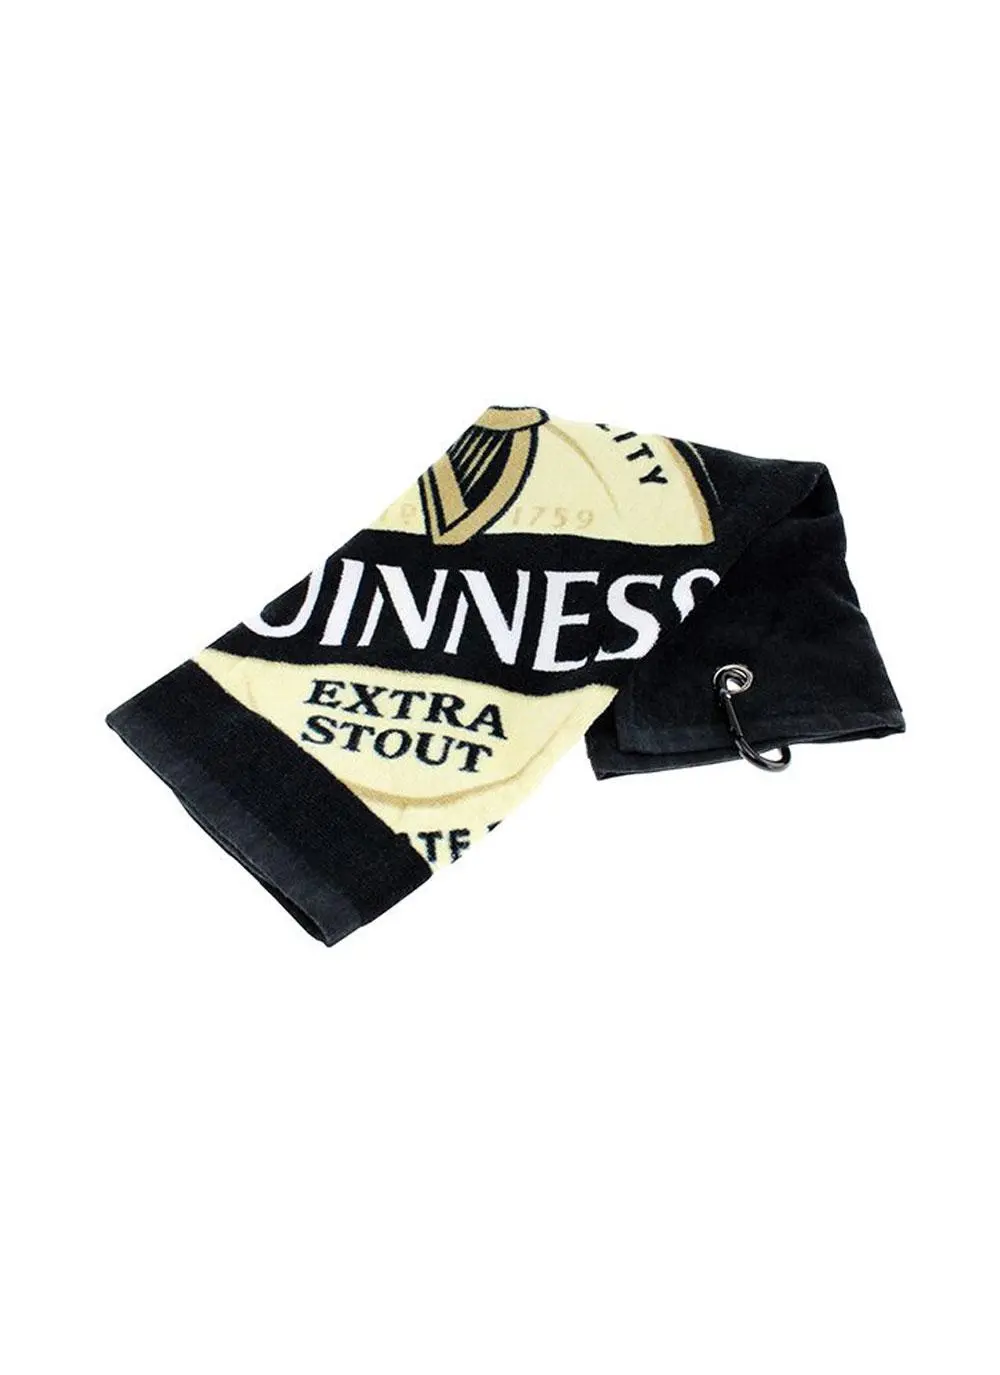 Guinness Golf Gift Set